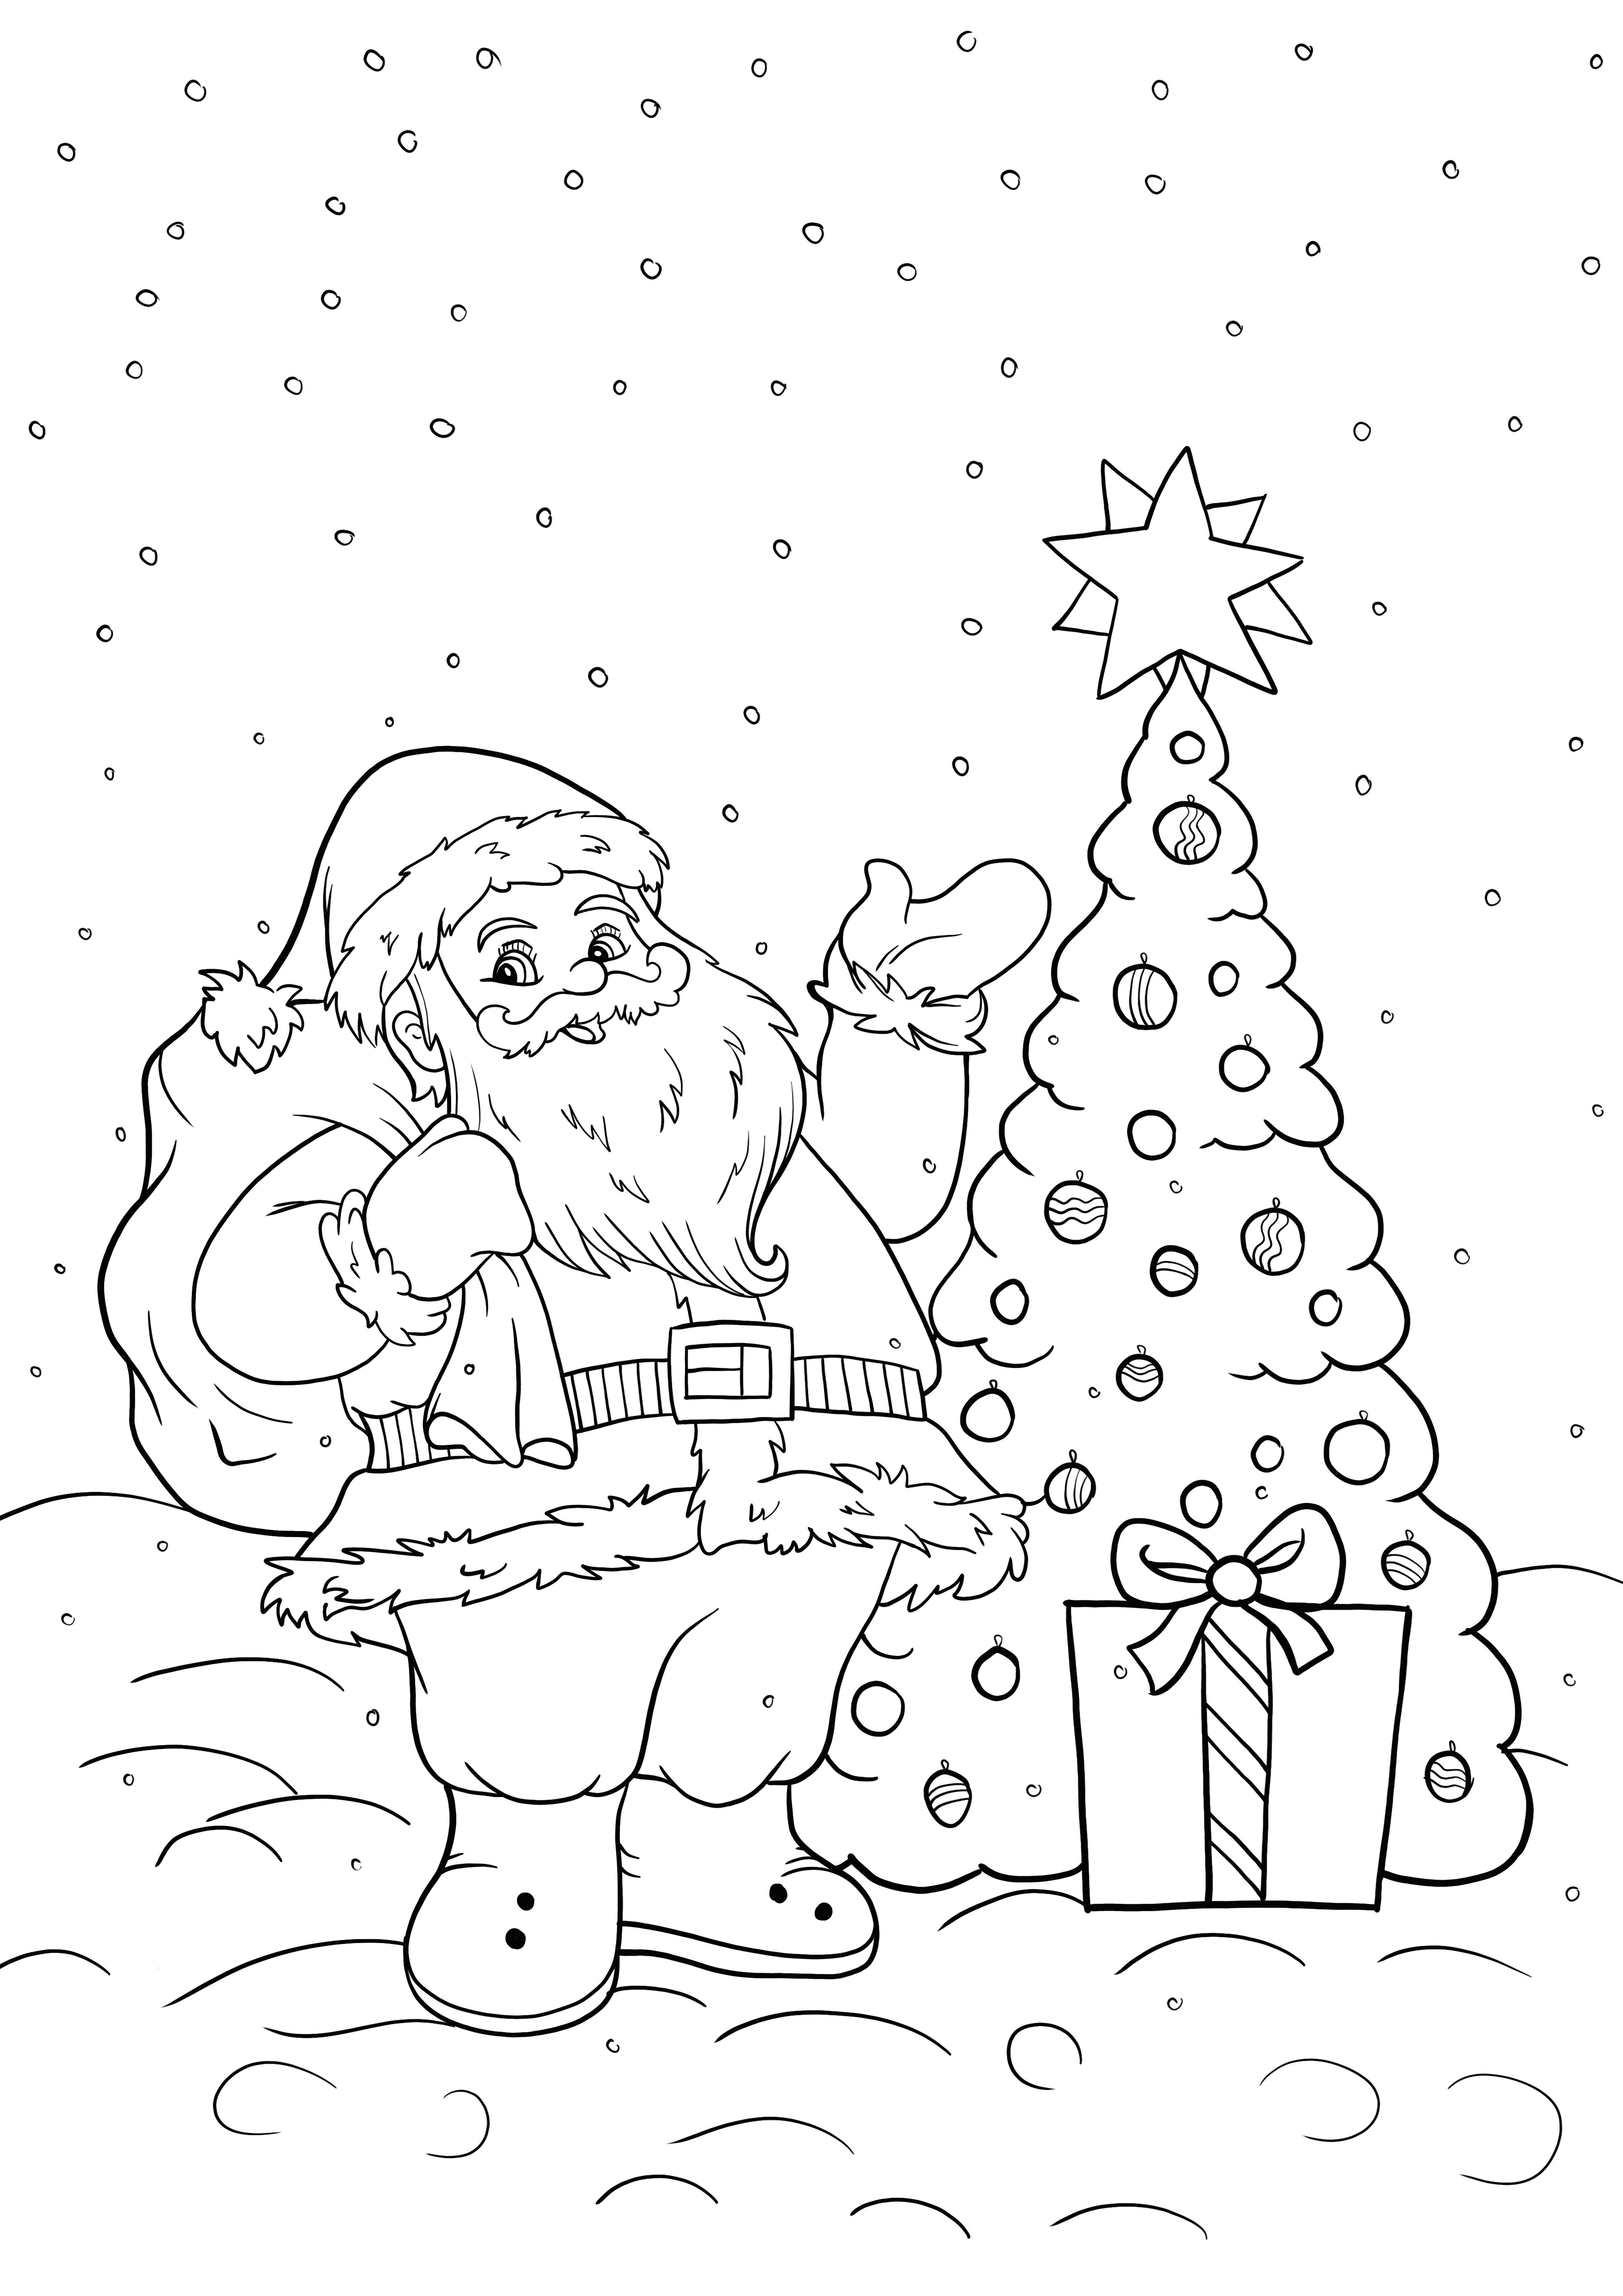 Impressão de Papai Noel e árvore de Natal grátis e para colorir